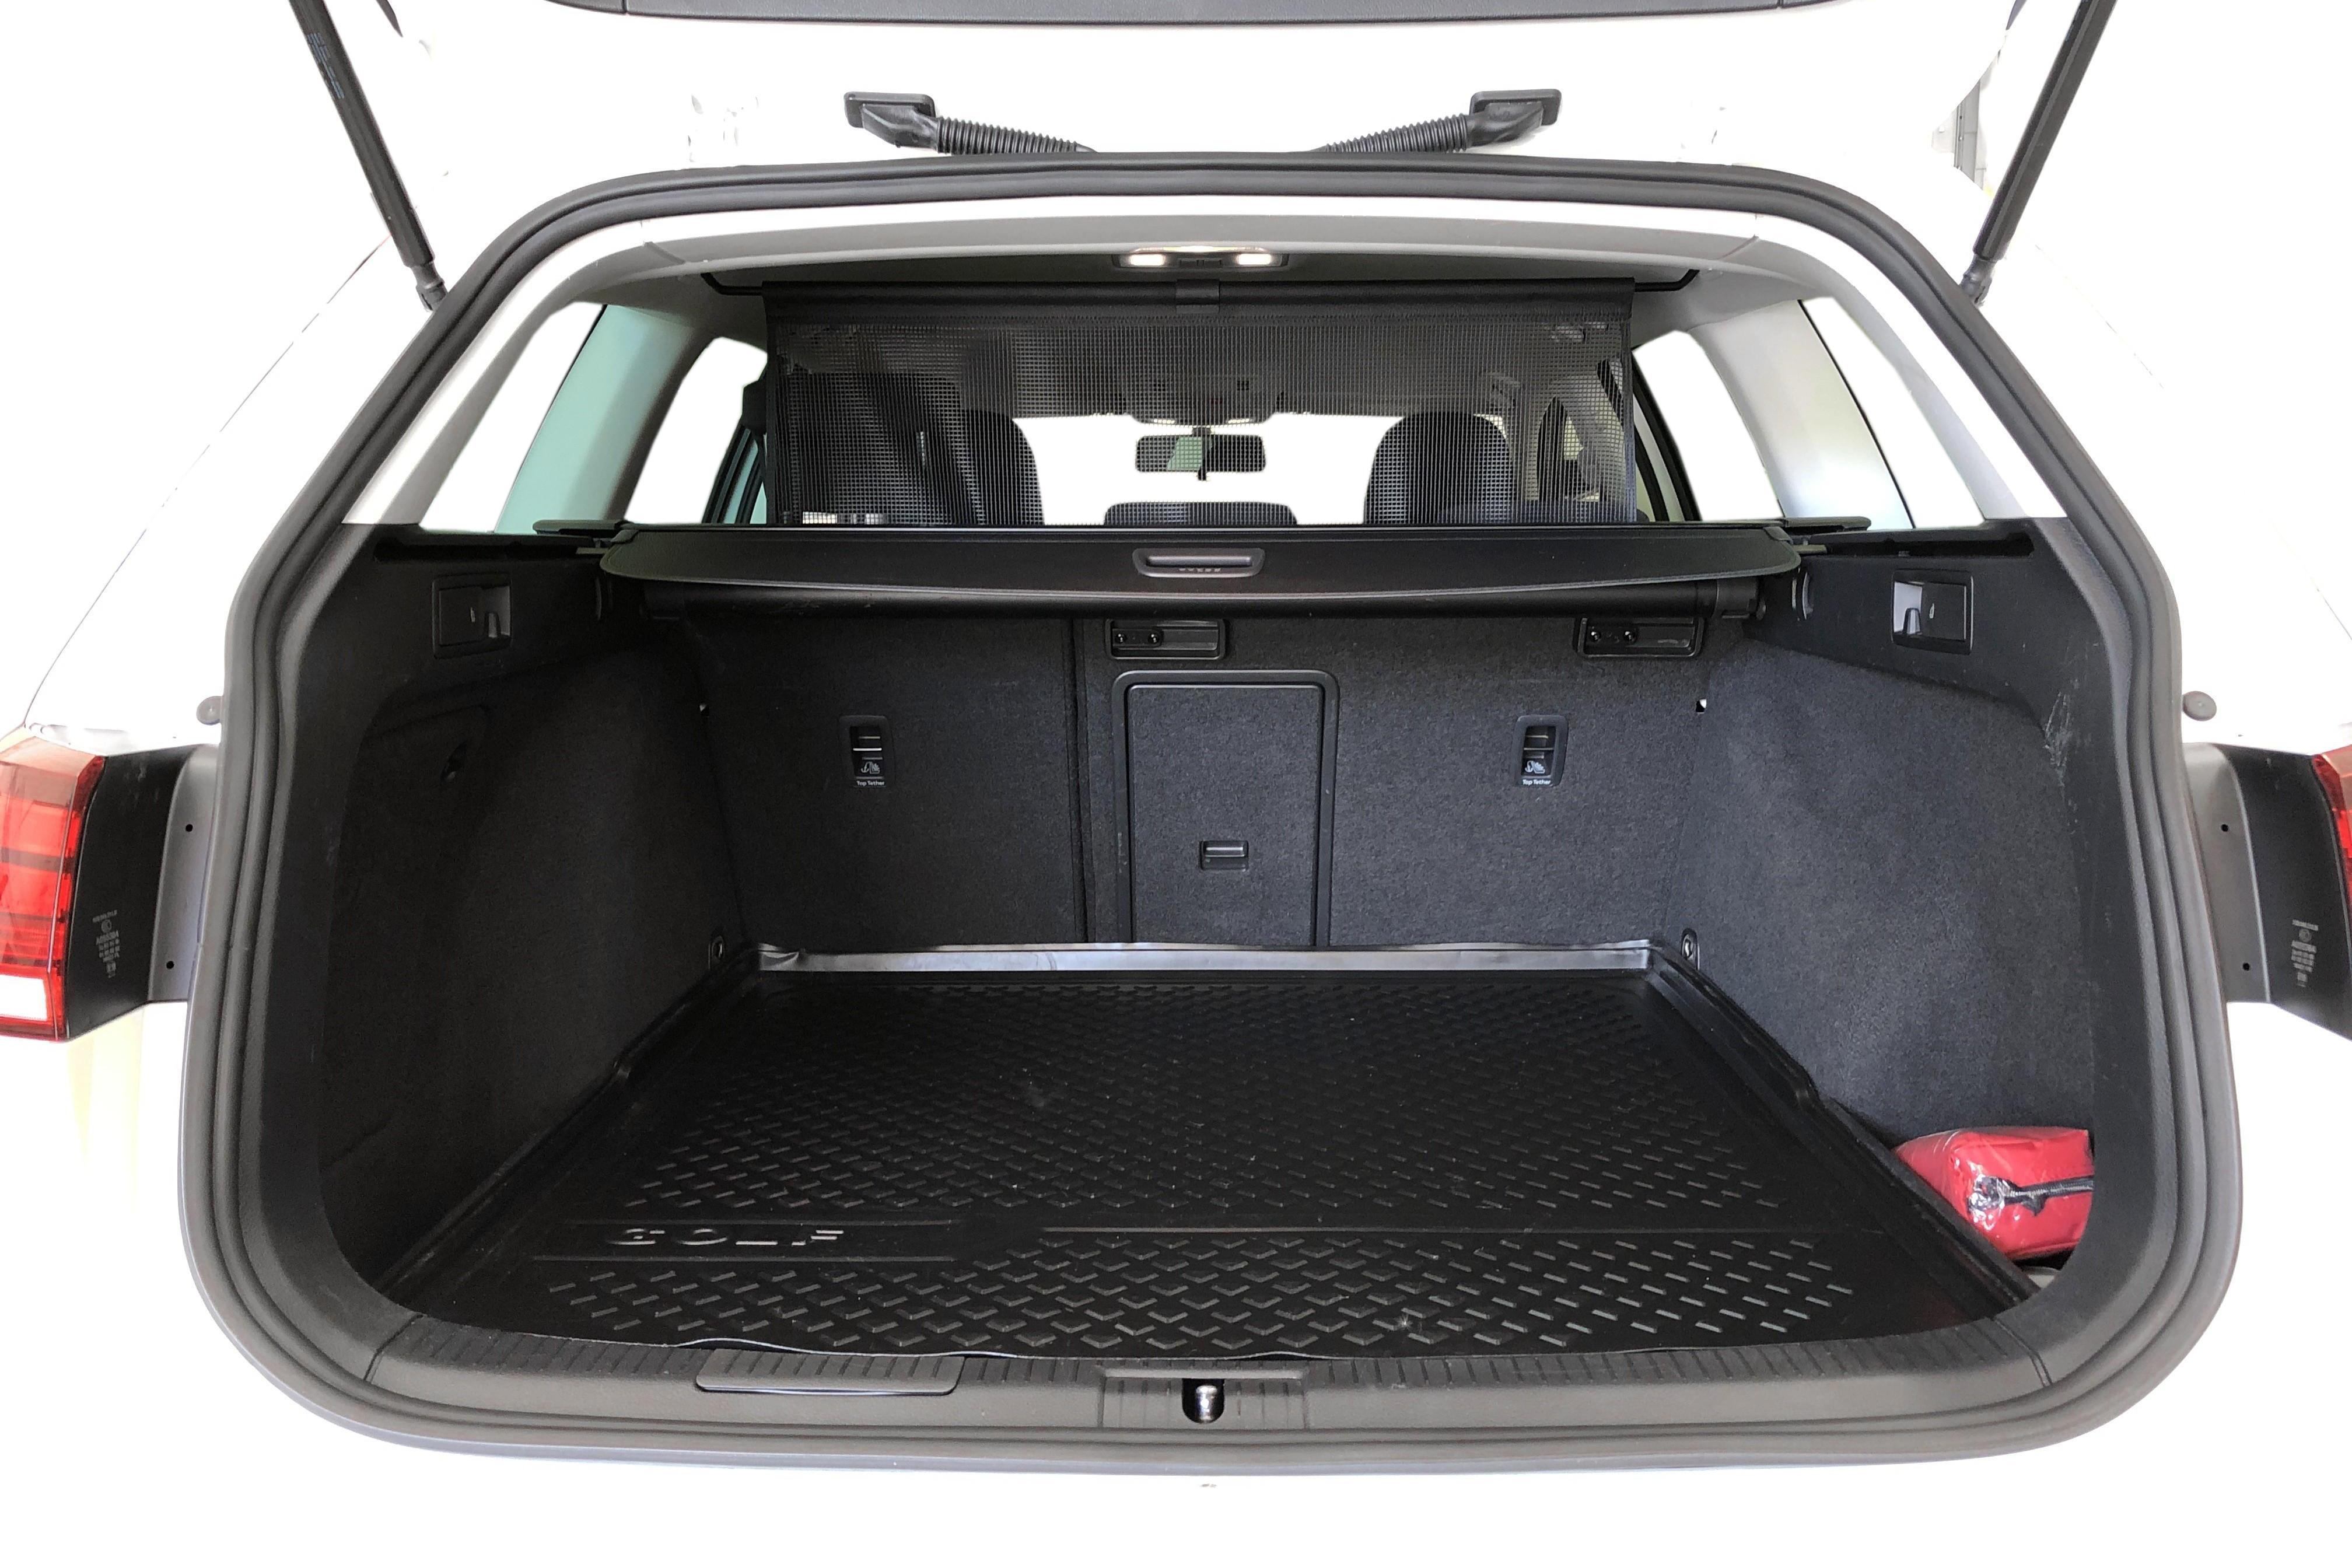 VW Golf VII 1.6 TDI Sportscombi (115hk) - 11 302 mil - Automat - vit - 2019